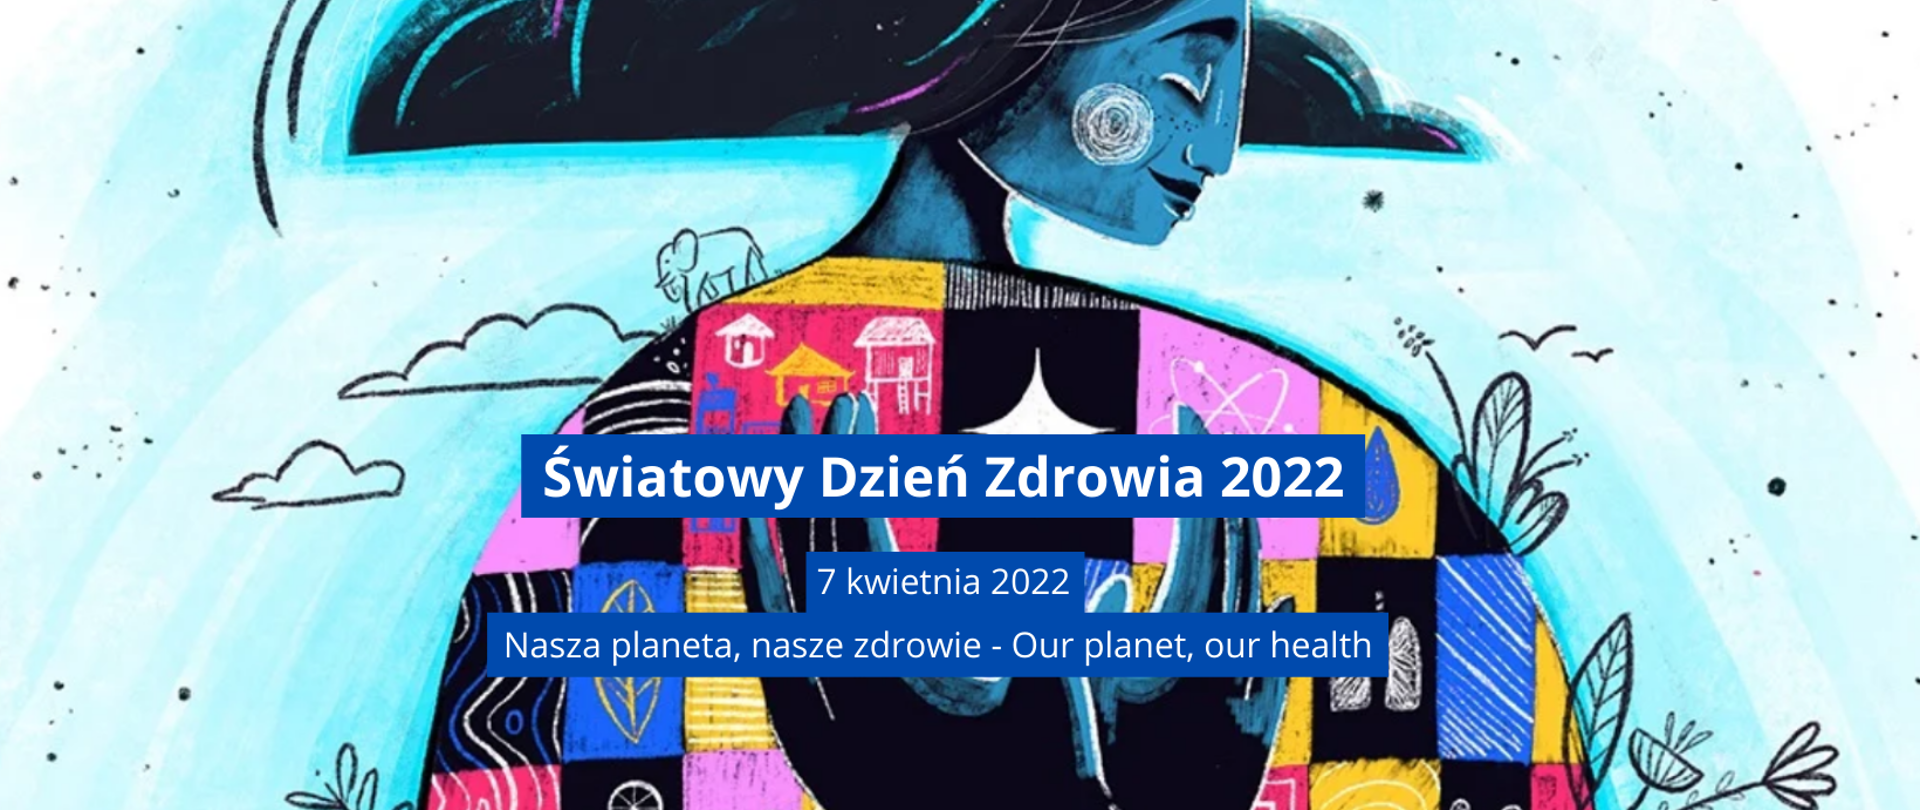  Swiatowy Dzien Zdrowia 2022 - logo